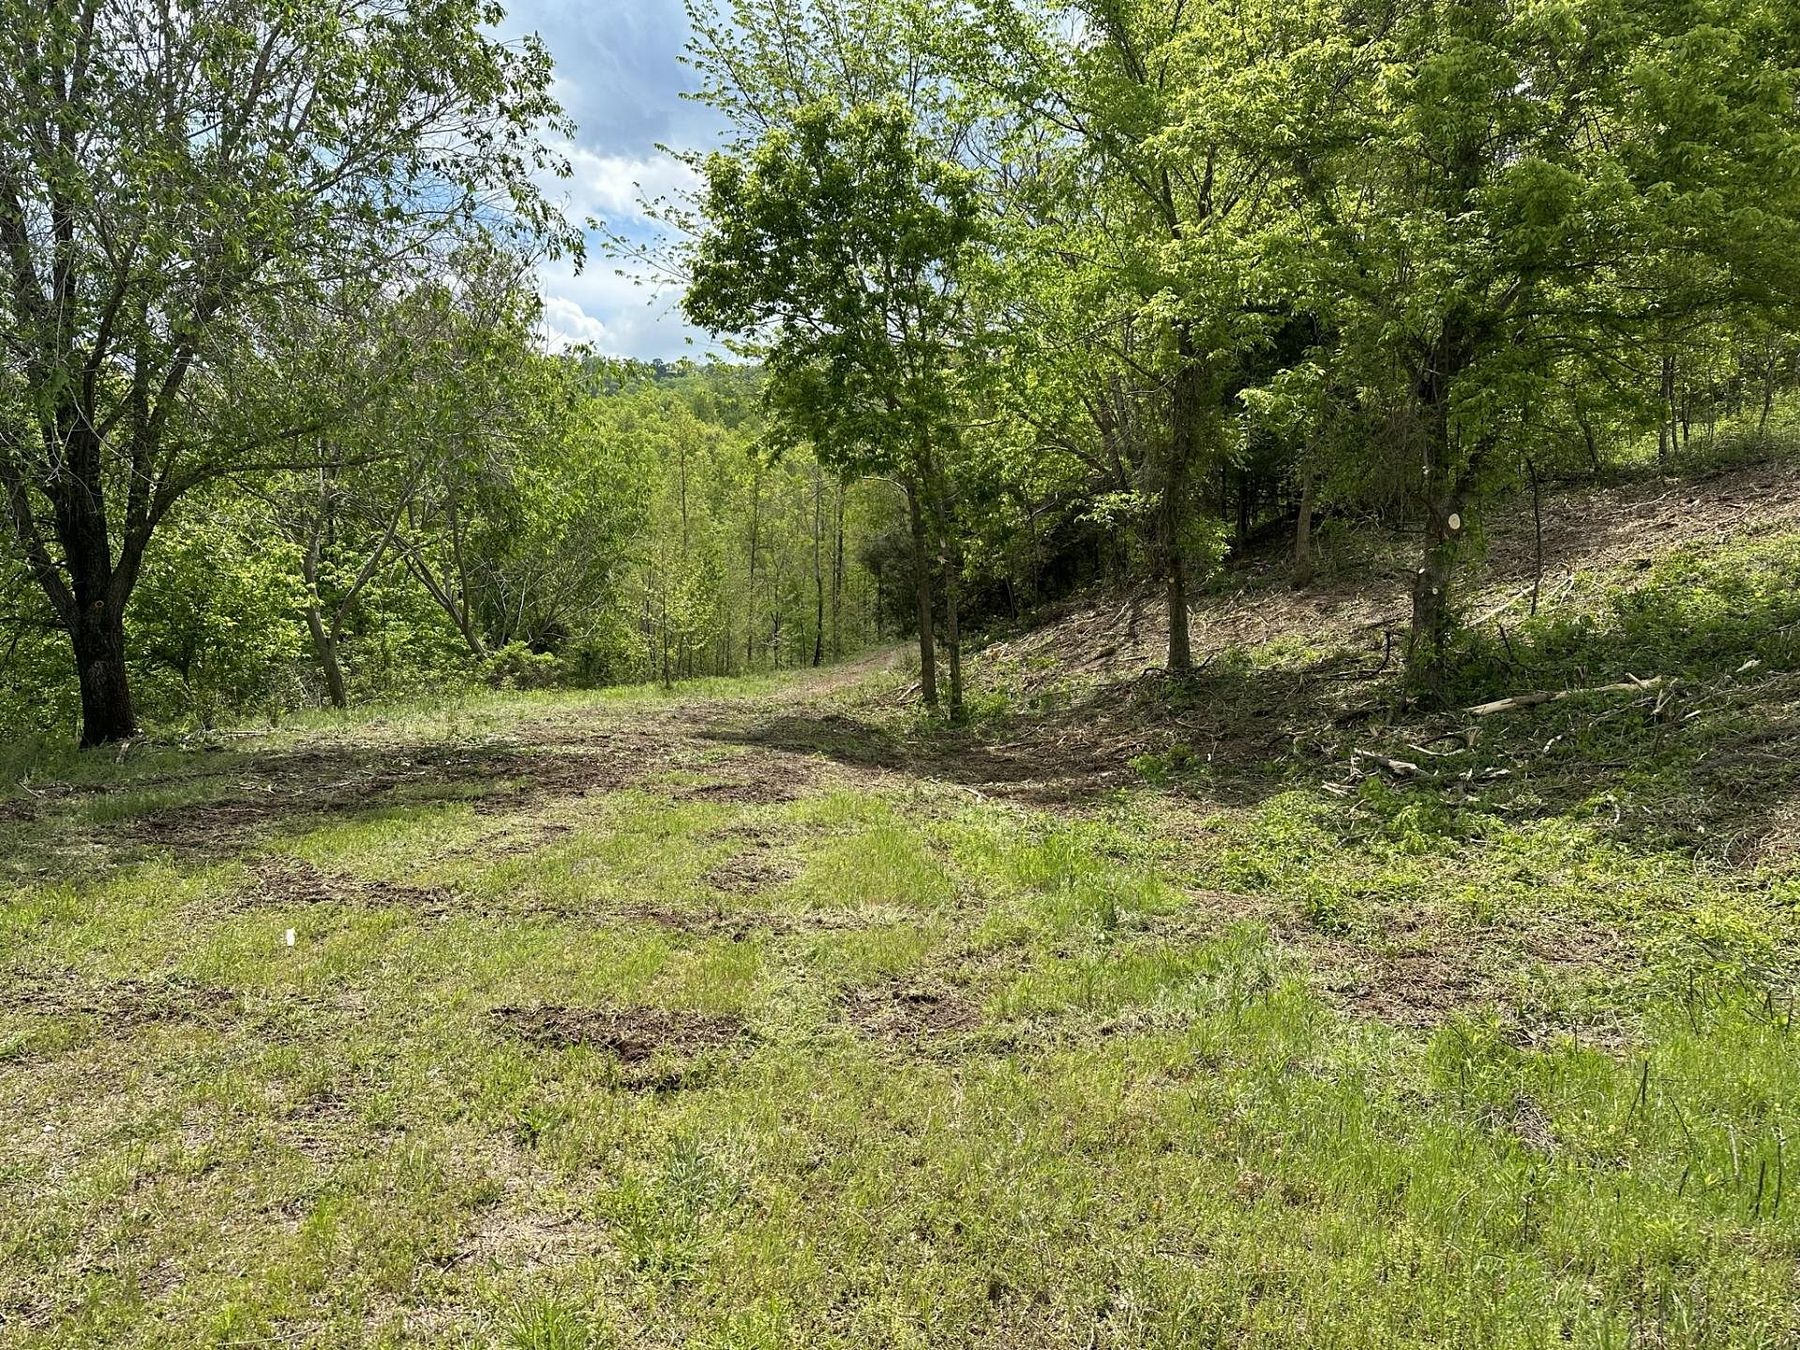 16.5 Acres of Recreational Land for Sale in Van Buren, Missouri